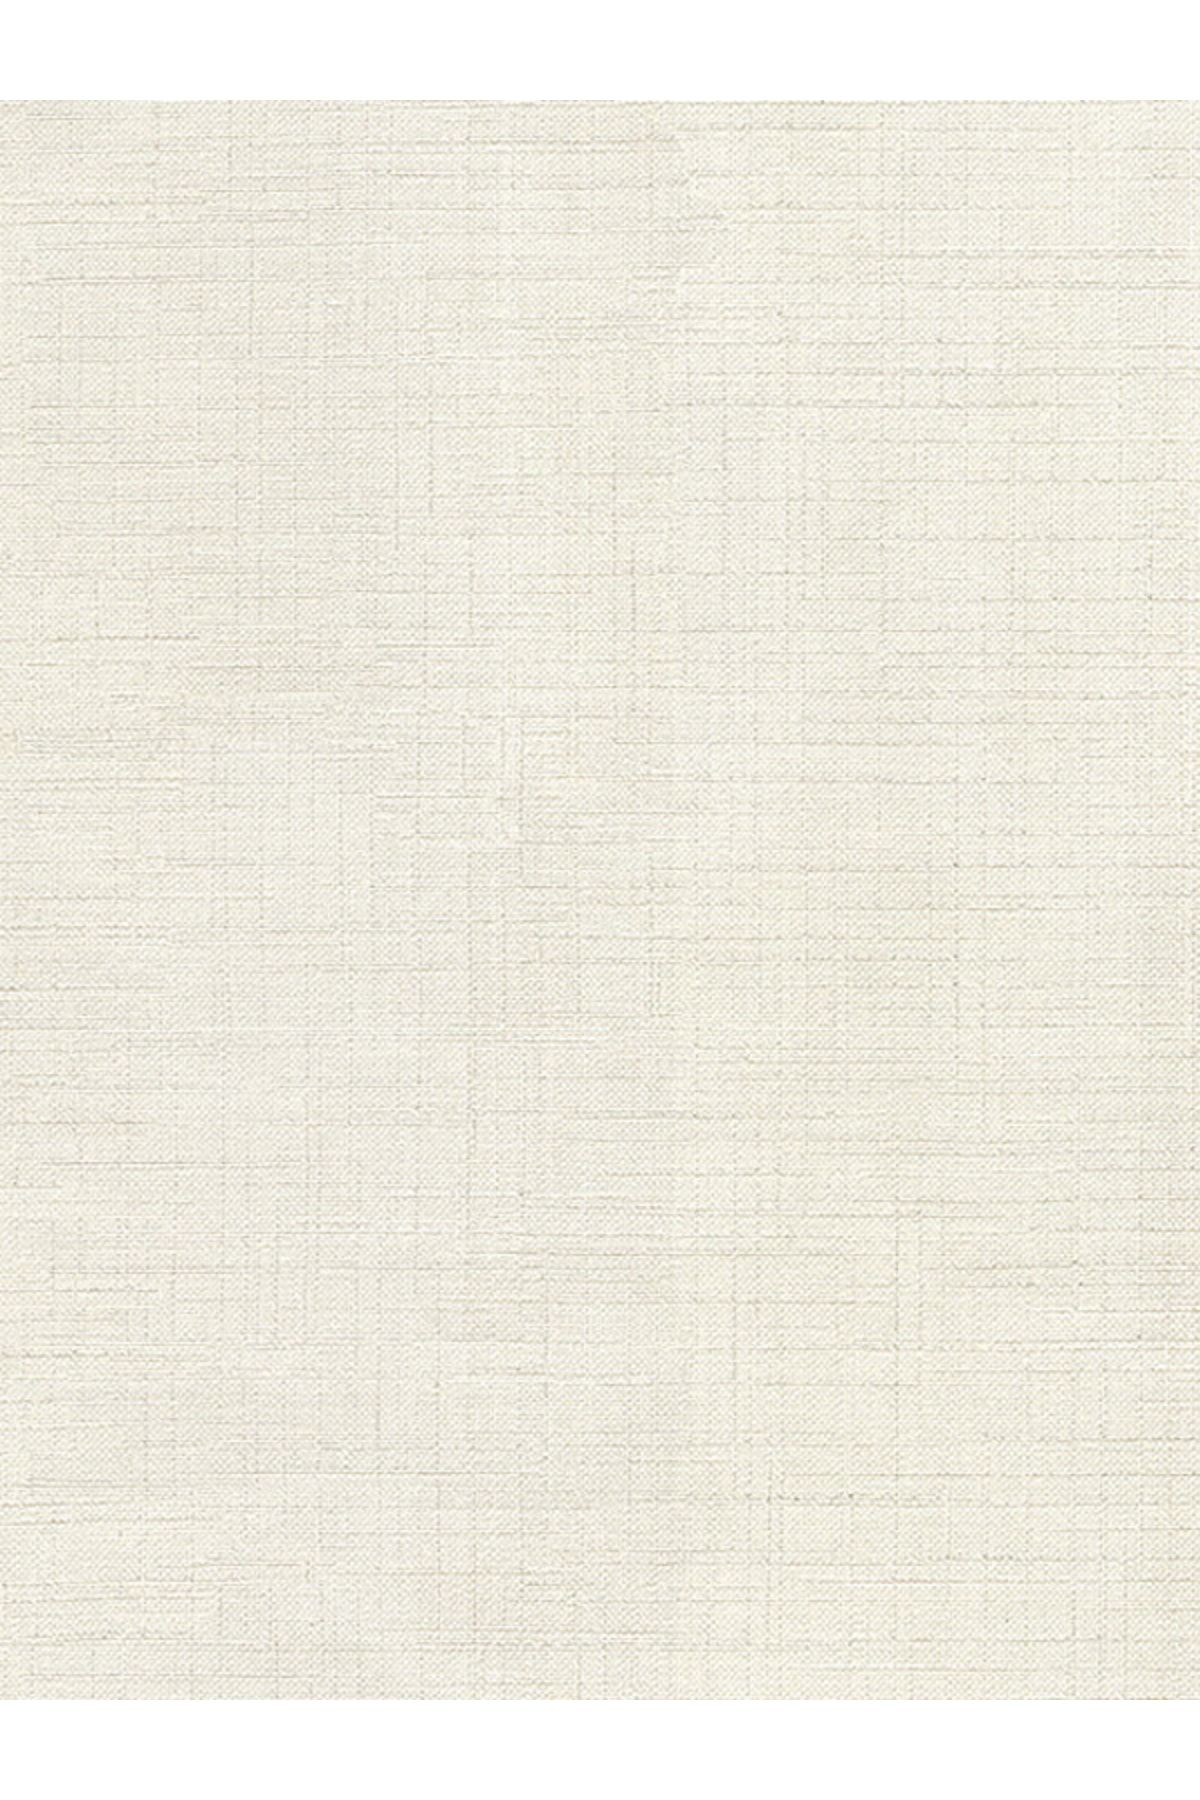 Decowall Decoparati Düz Beyaz Duvar Kağıdı 1514-04